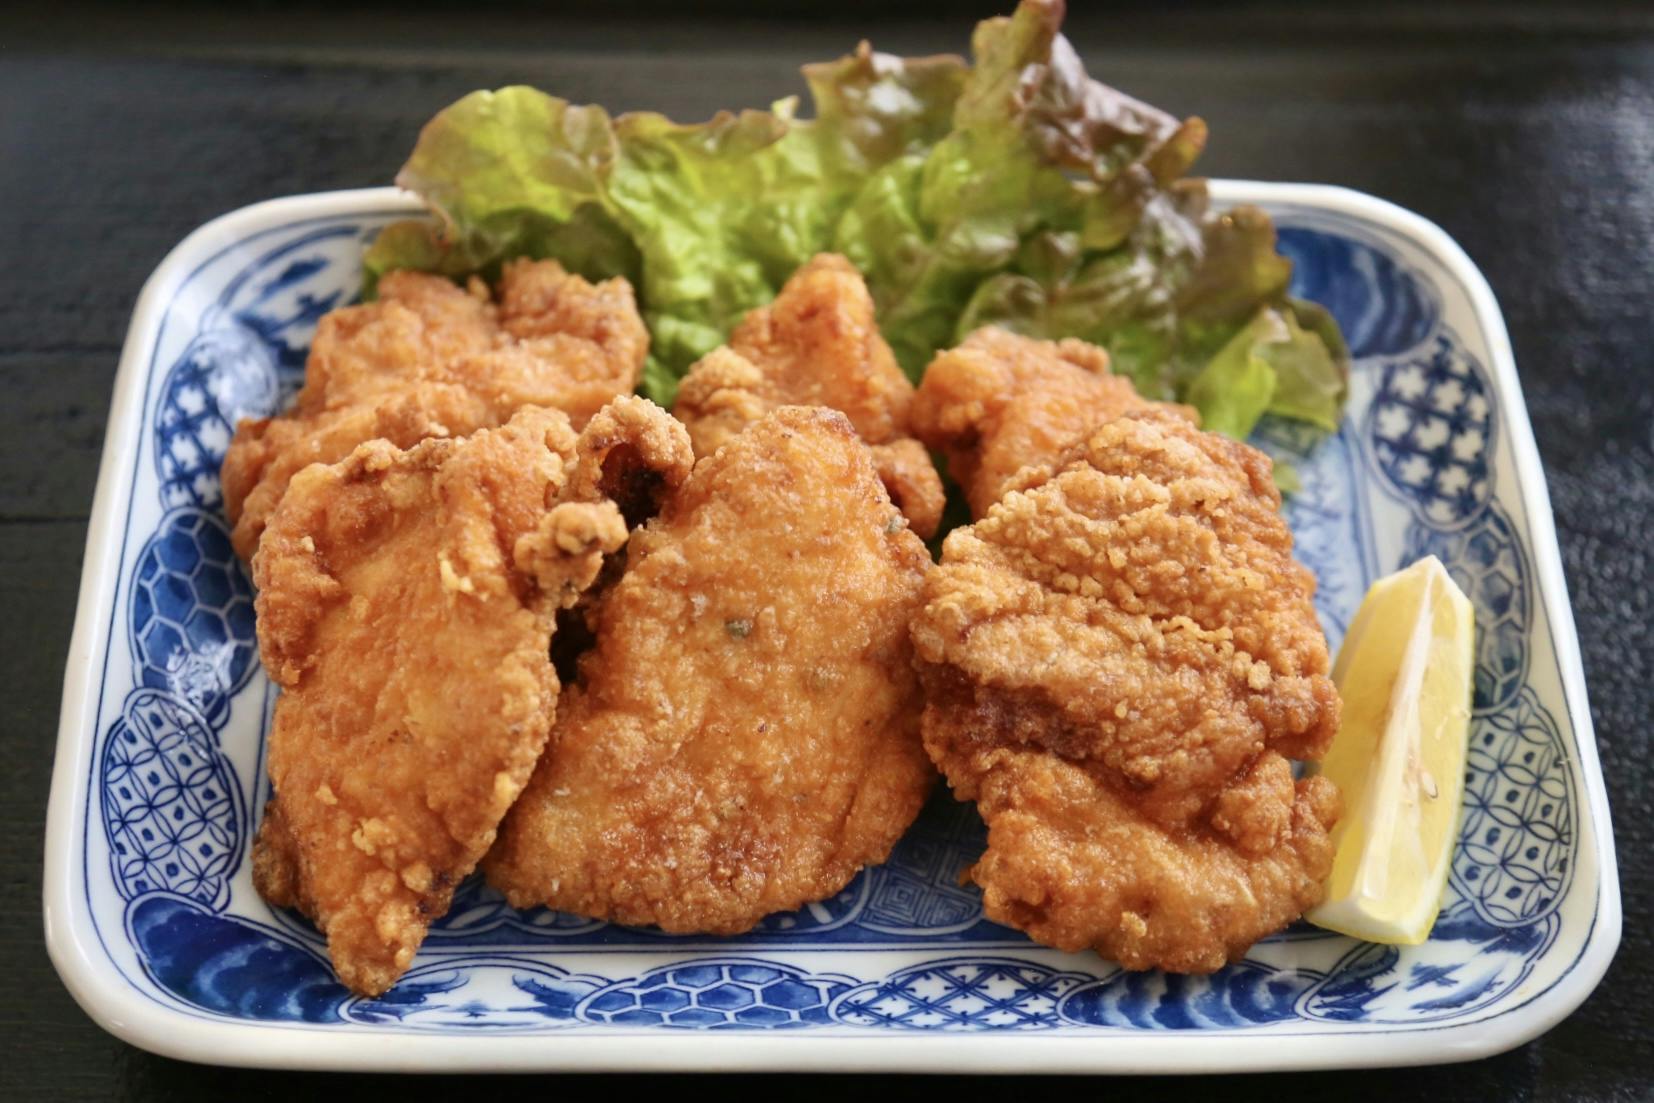 Tatsuta Age, Japanese style fried chicken